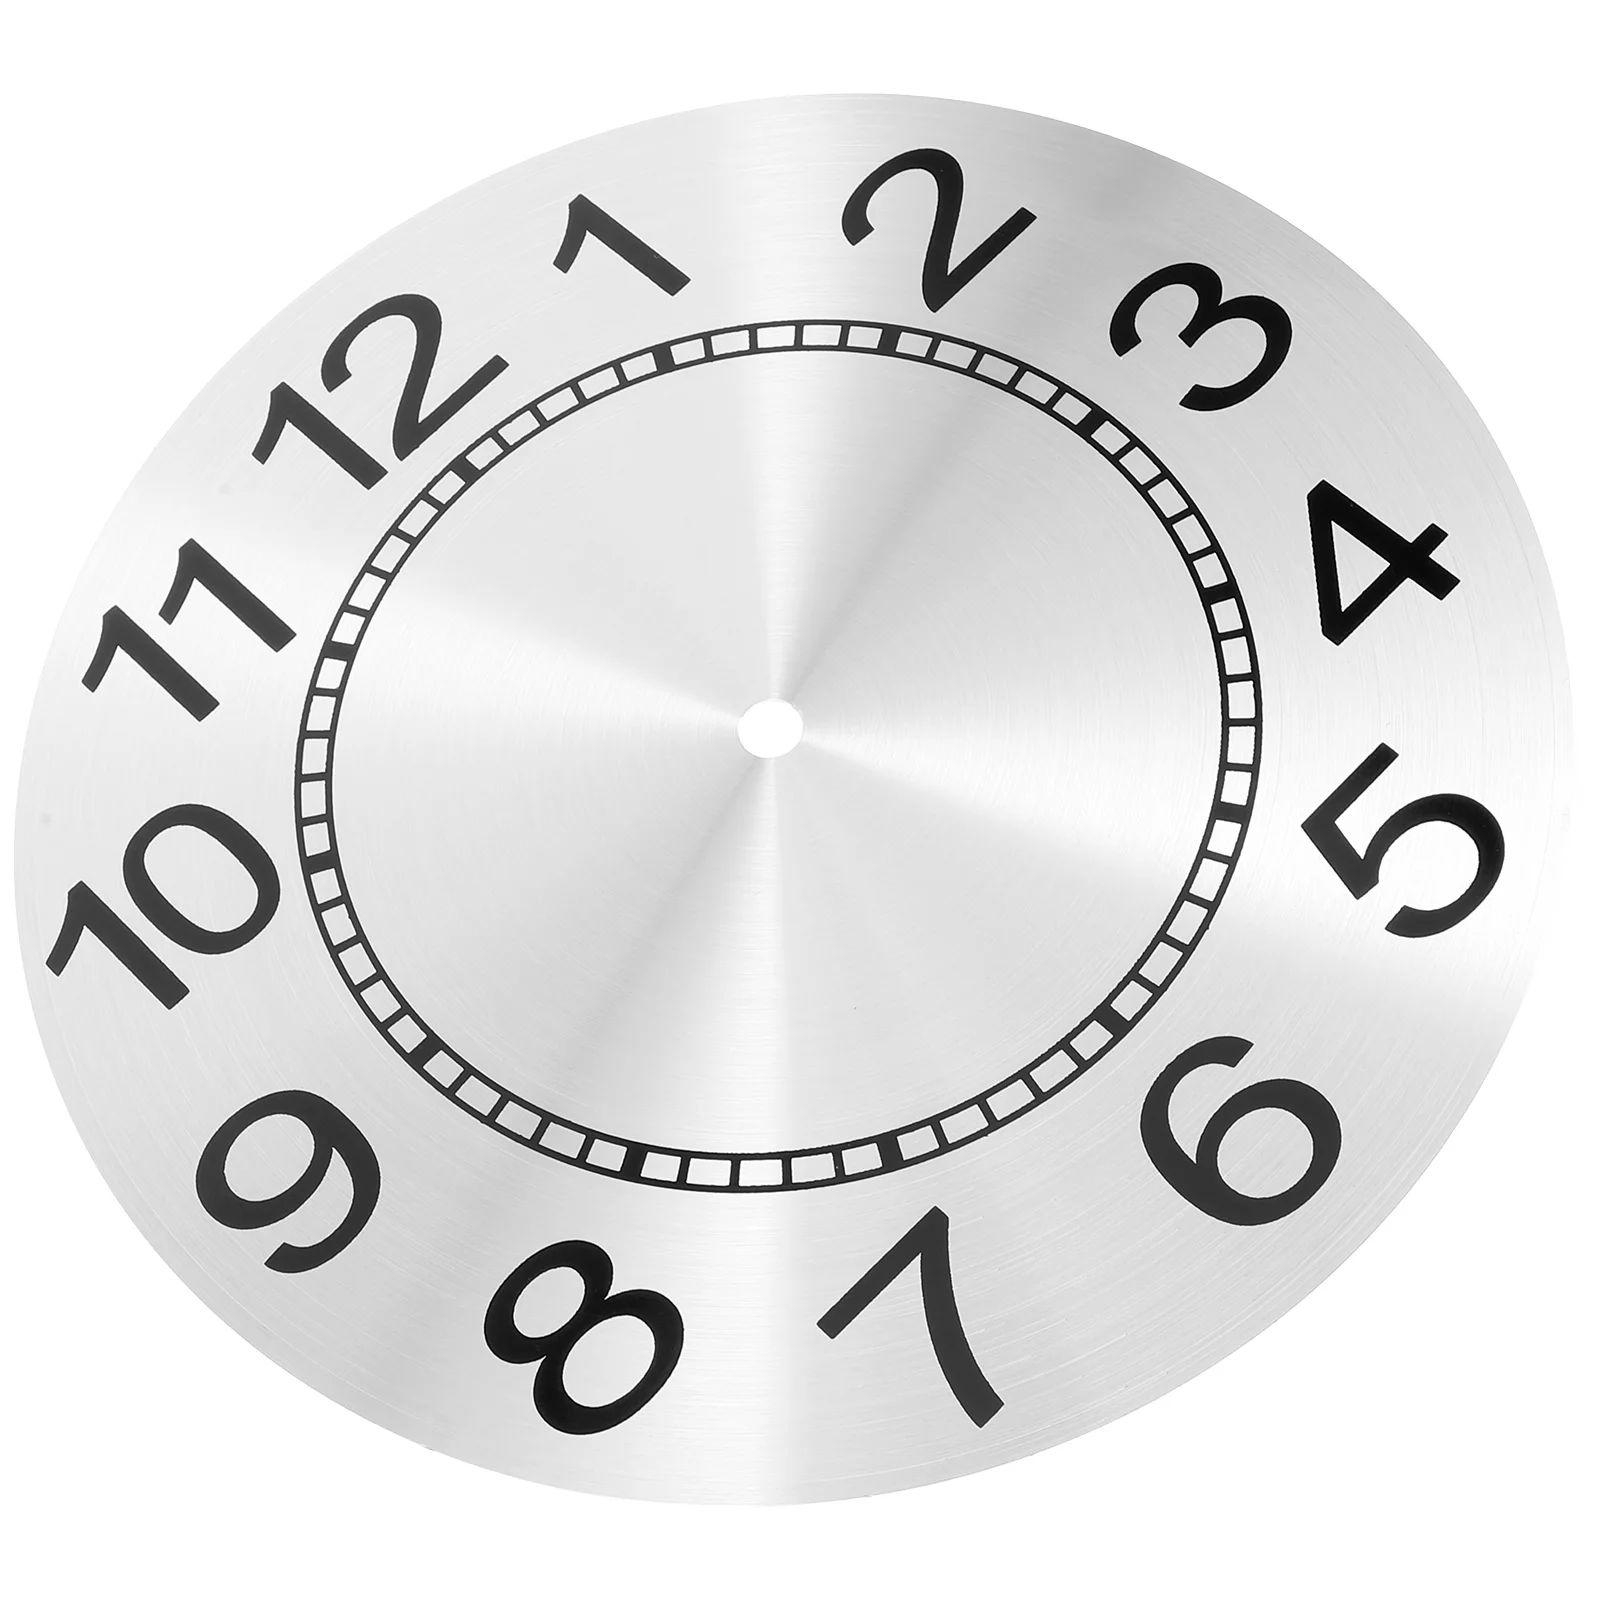 

Wall Clock Faces Aluminum DIY Round Clock Dials Digital Clock Dial Replacement Quartz Clock Movement Hanging Clock Dial